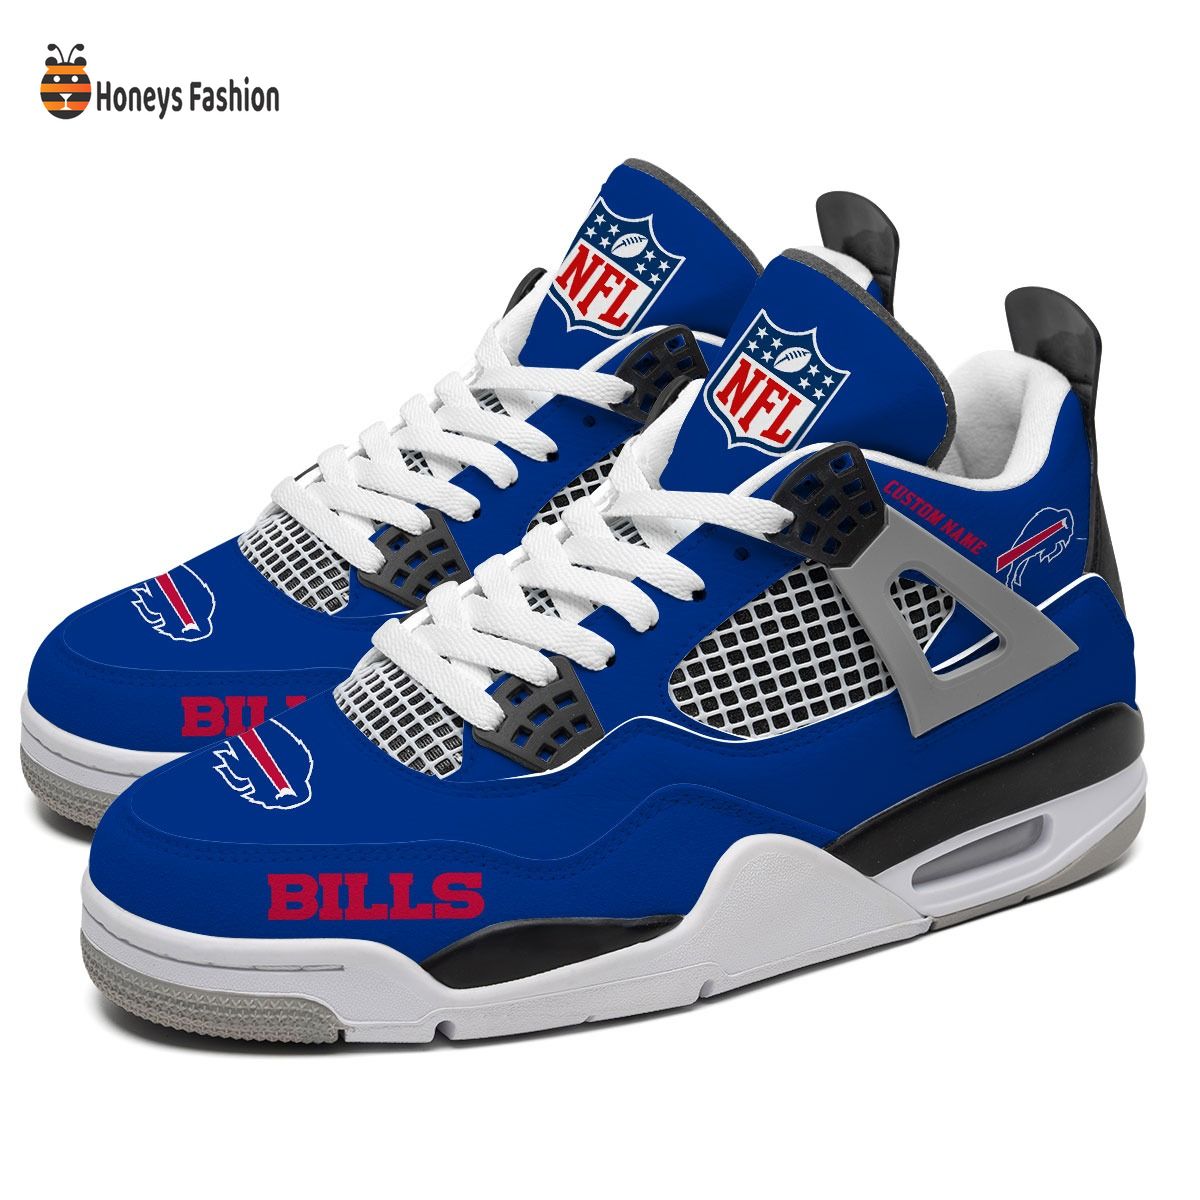 Buffalo Bills NFL Air Jordan 4 Shoes